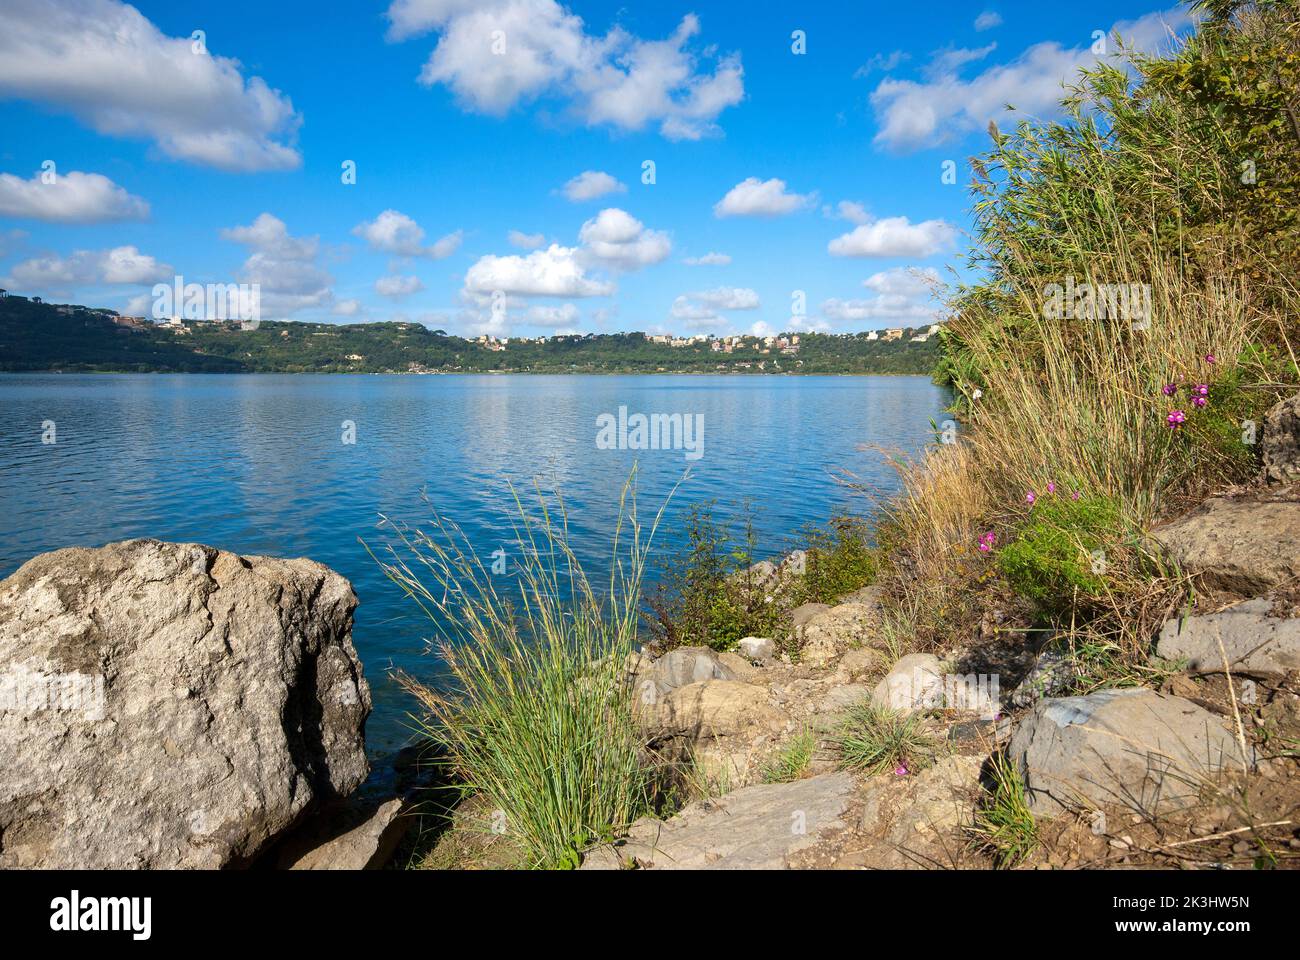 Lake Albano, castelli Romani Regional Park, Rome, Lazio, Italy Stock Photo